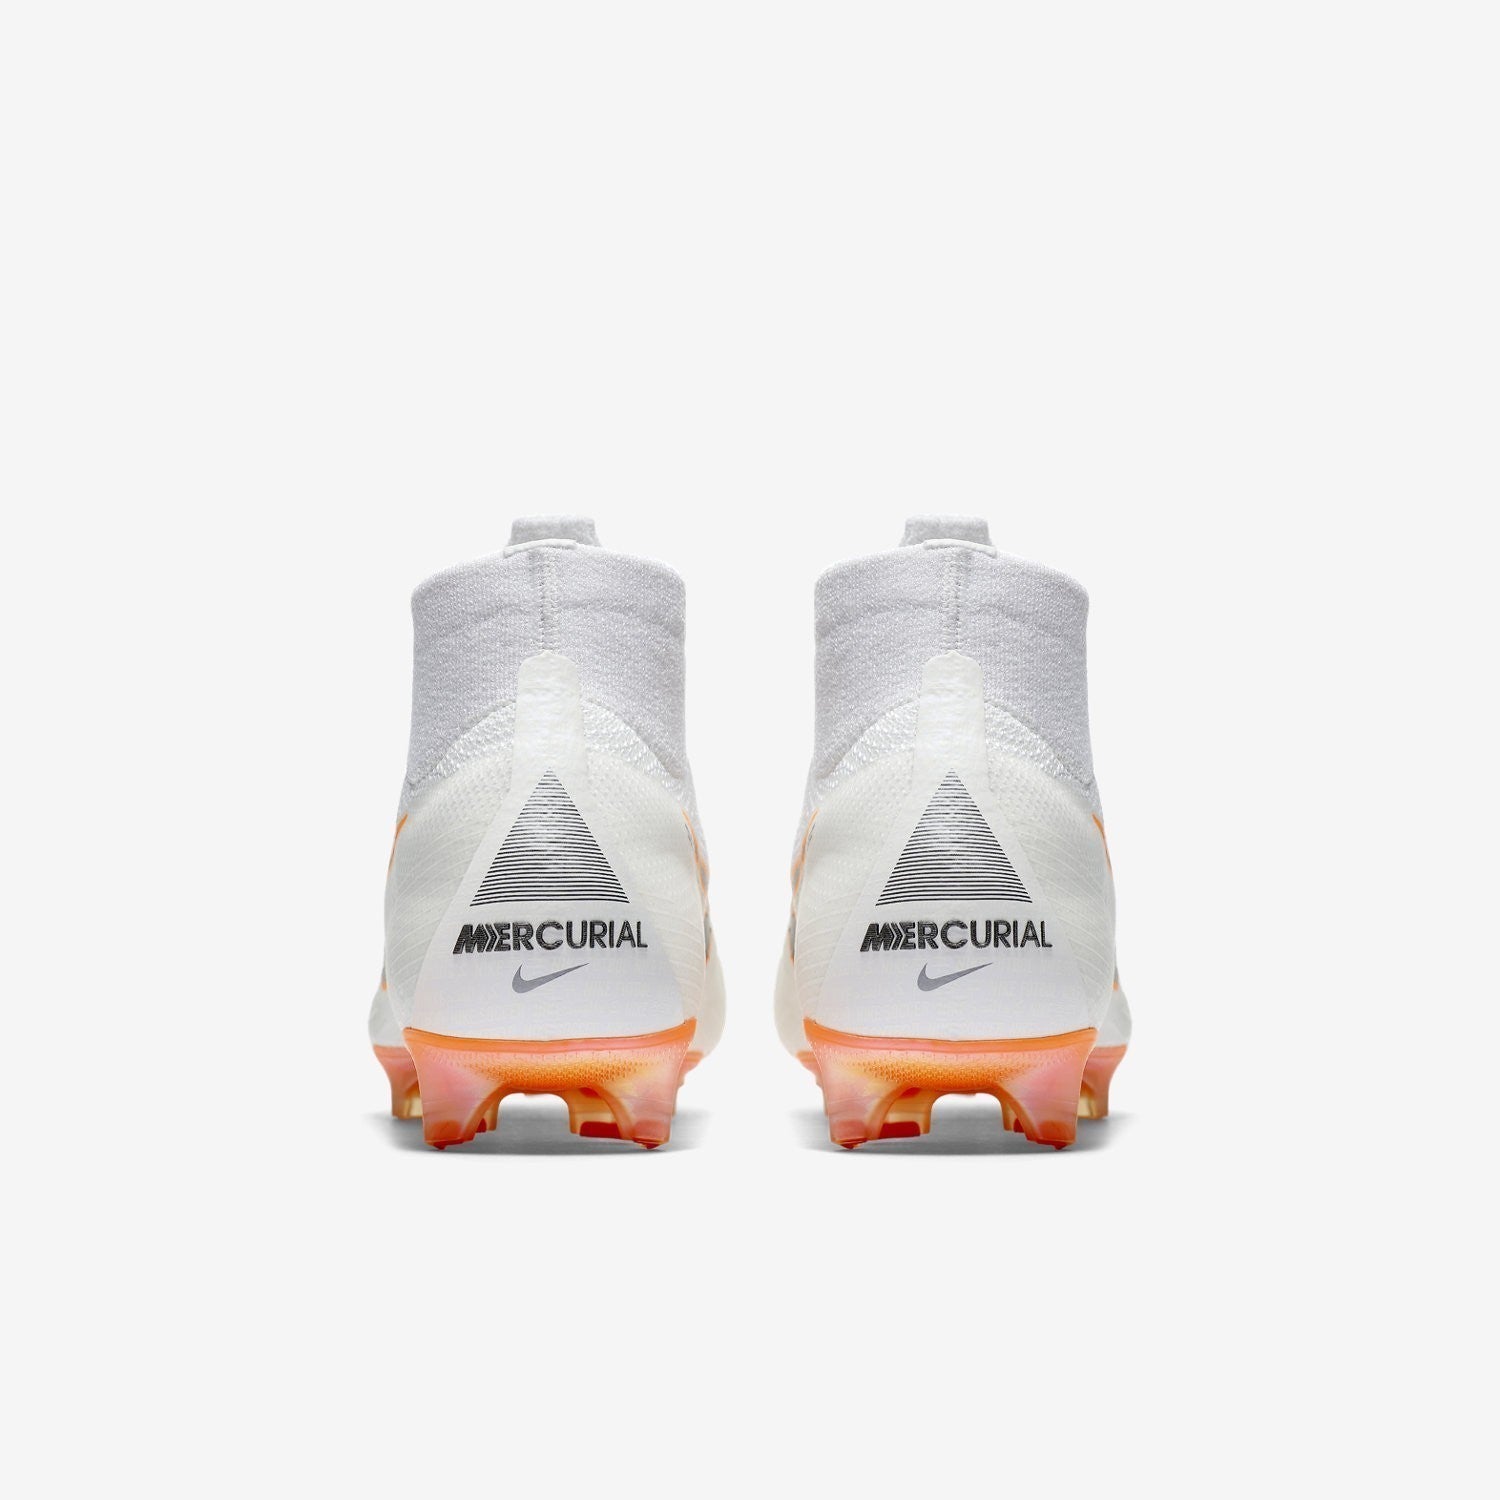 Mercurial Superfly 6 360 FG Soccer - White/Total Orange/G